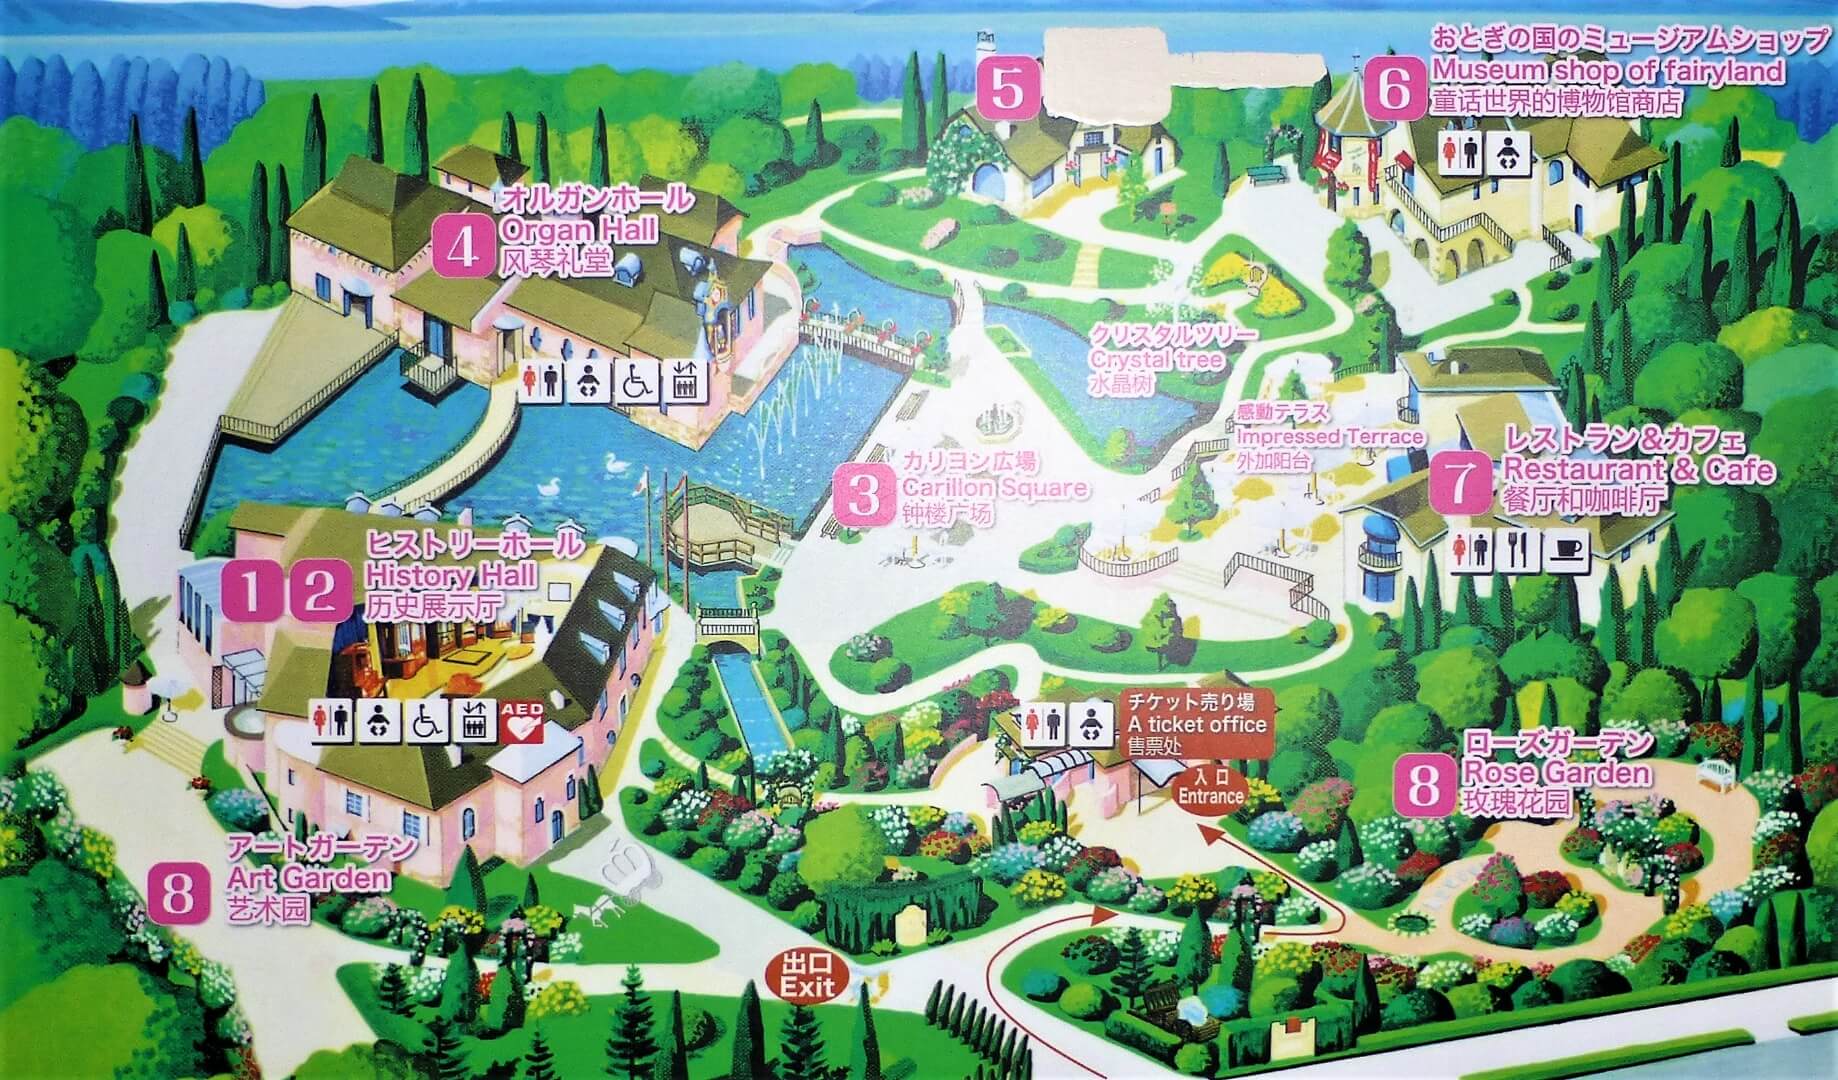 河口湖 音楽と森の美術館 河口湖オルゴールの森美術館 河口湖で 観る 富士山ぽ